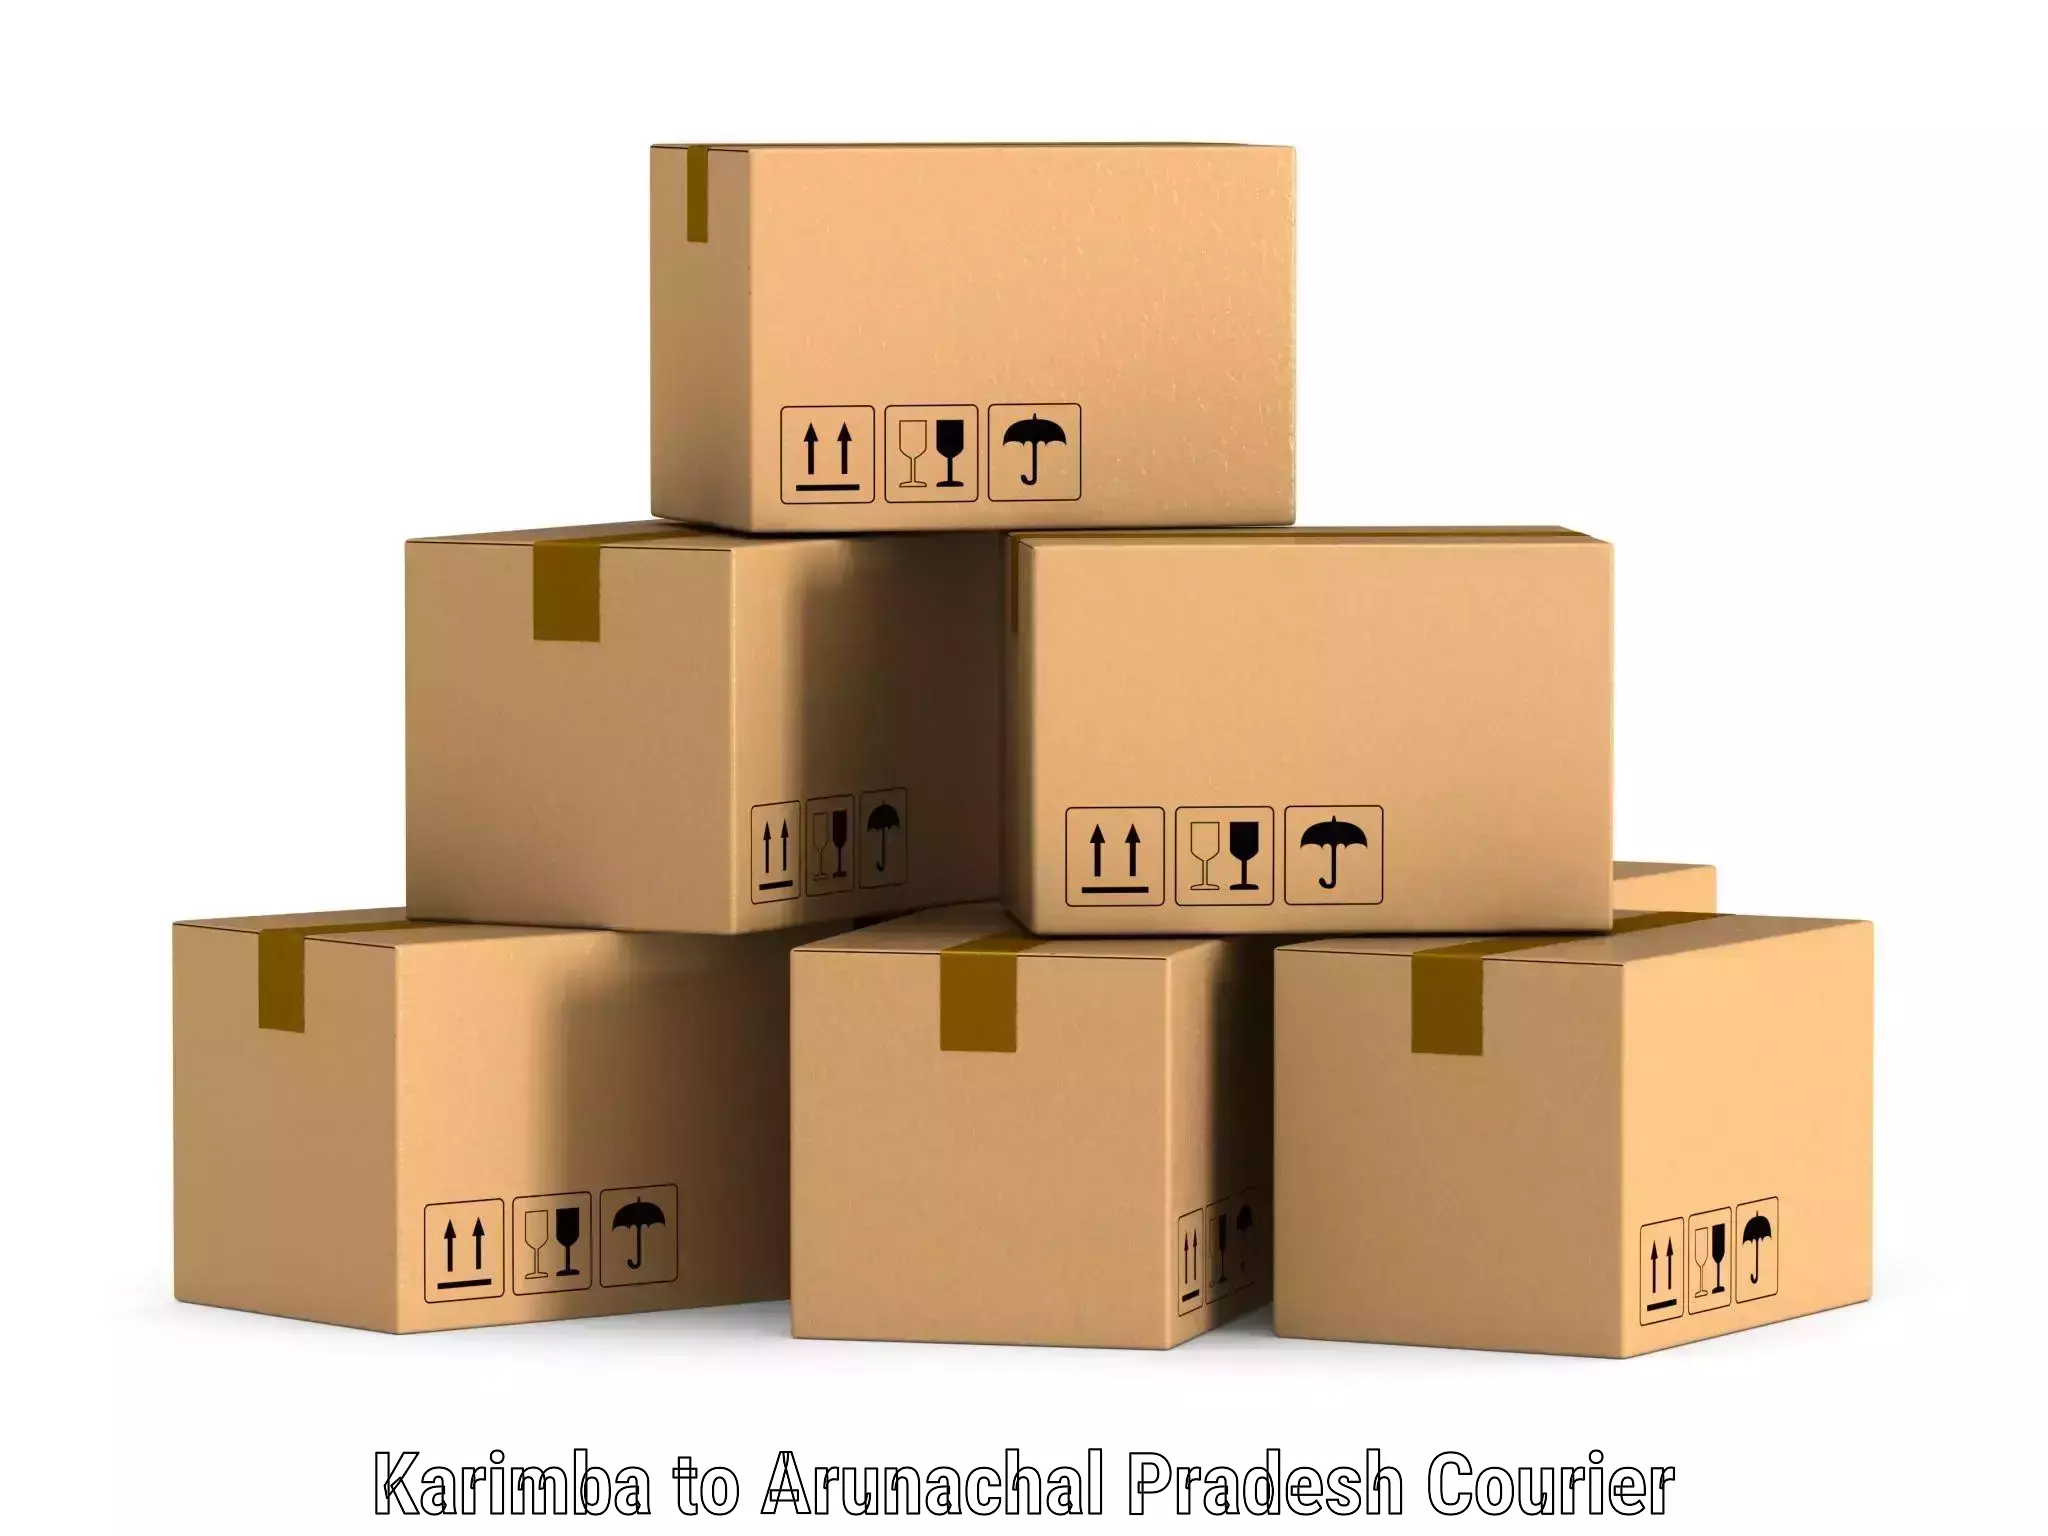 Express mail solutions Karimba to Arunachal Pradesh